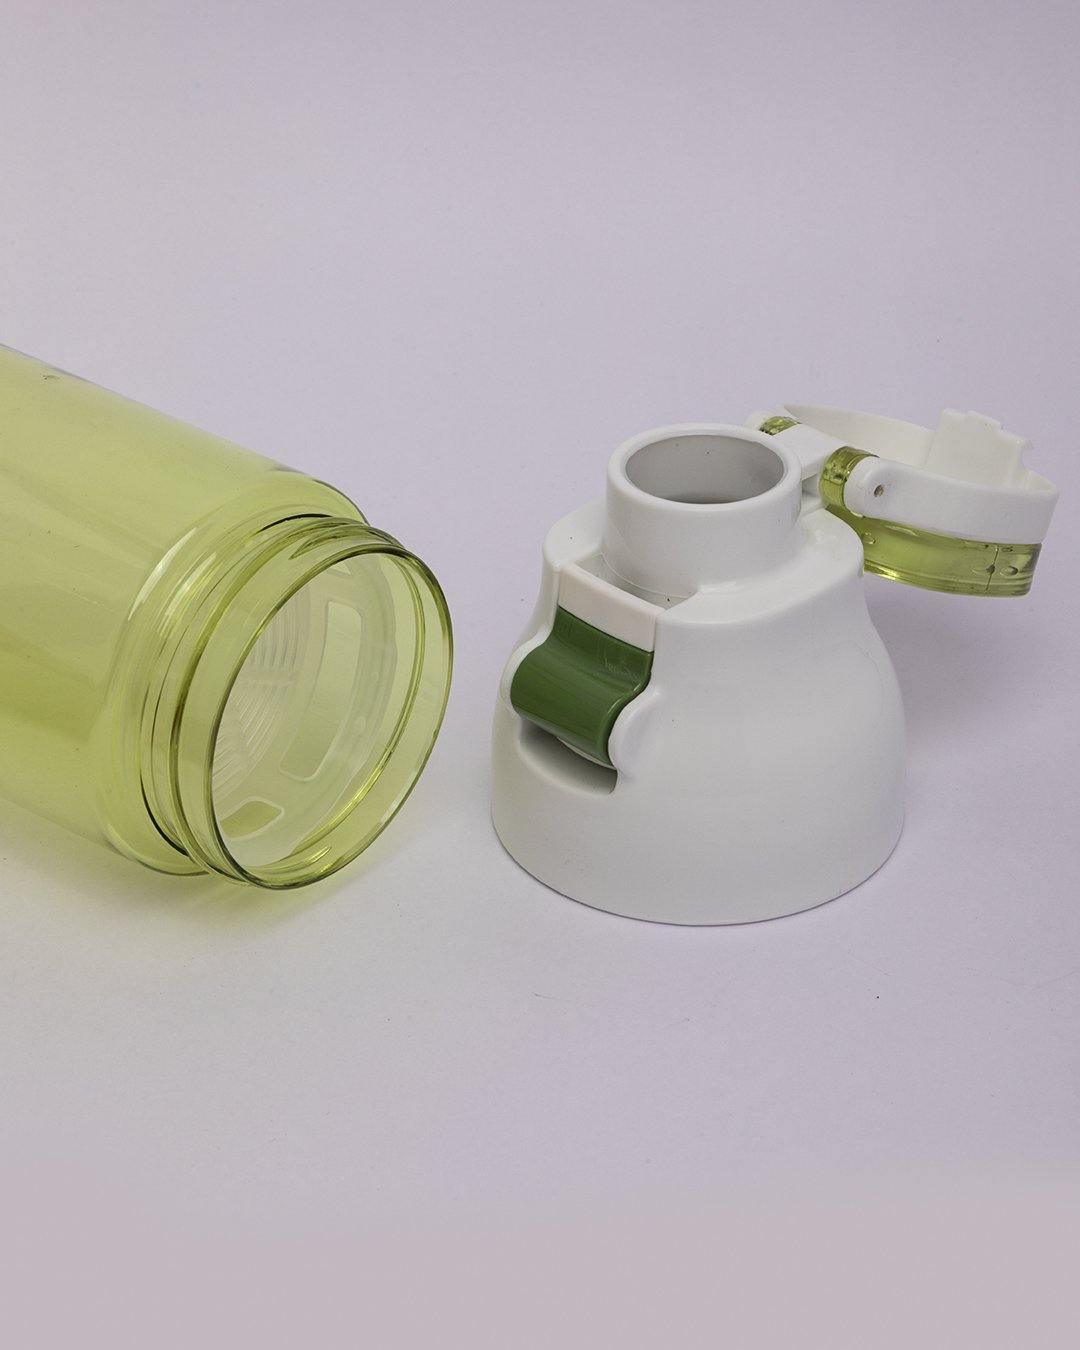 Donati Bottle, Water Bottle, Green, Plastic, 660 mL - MARKET 99